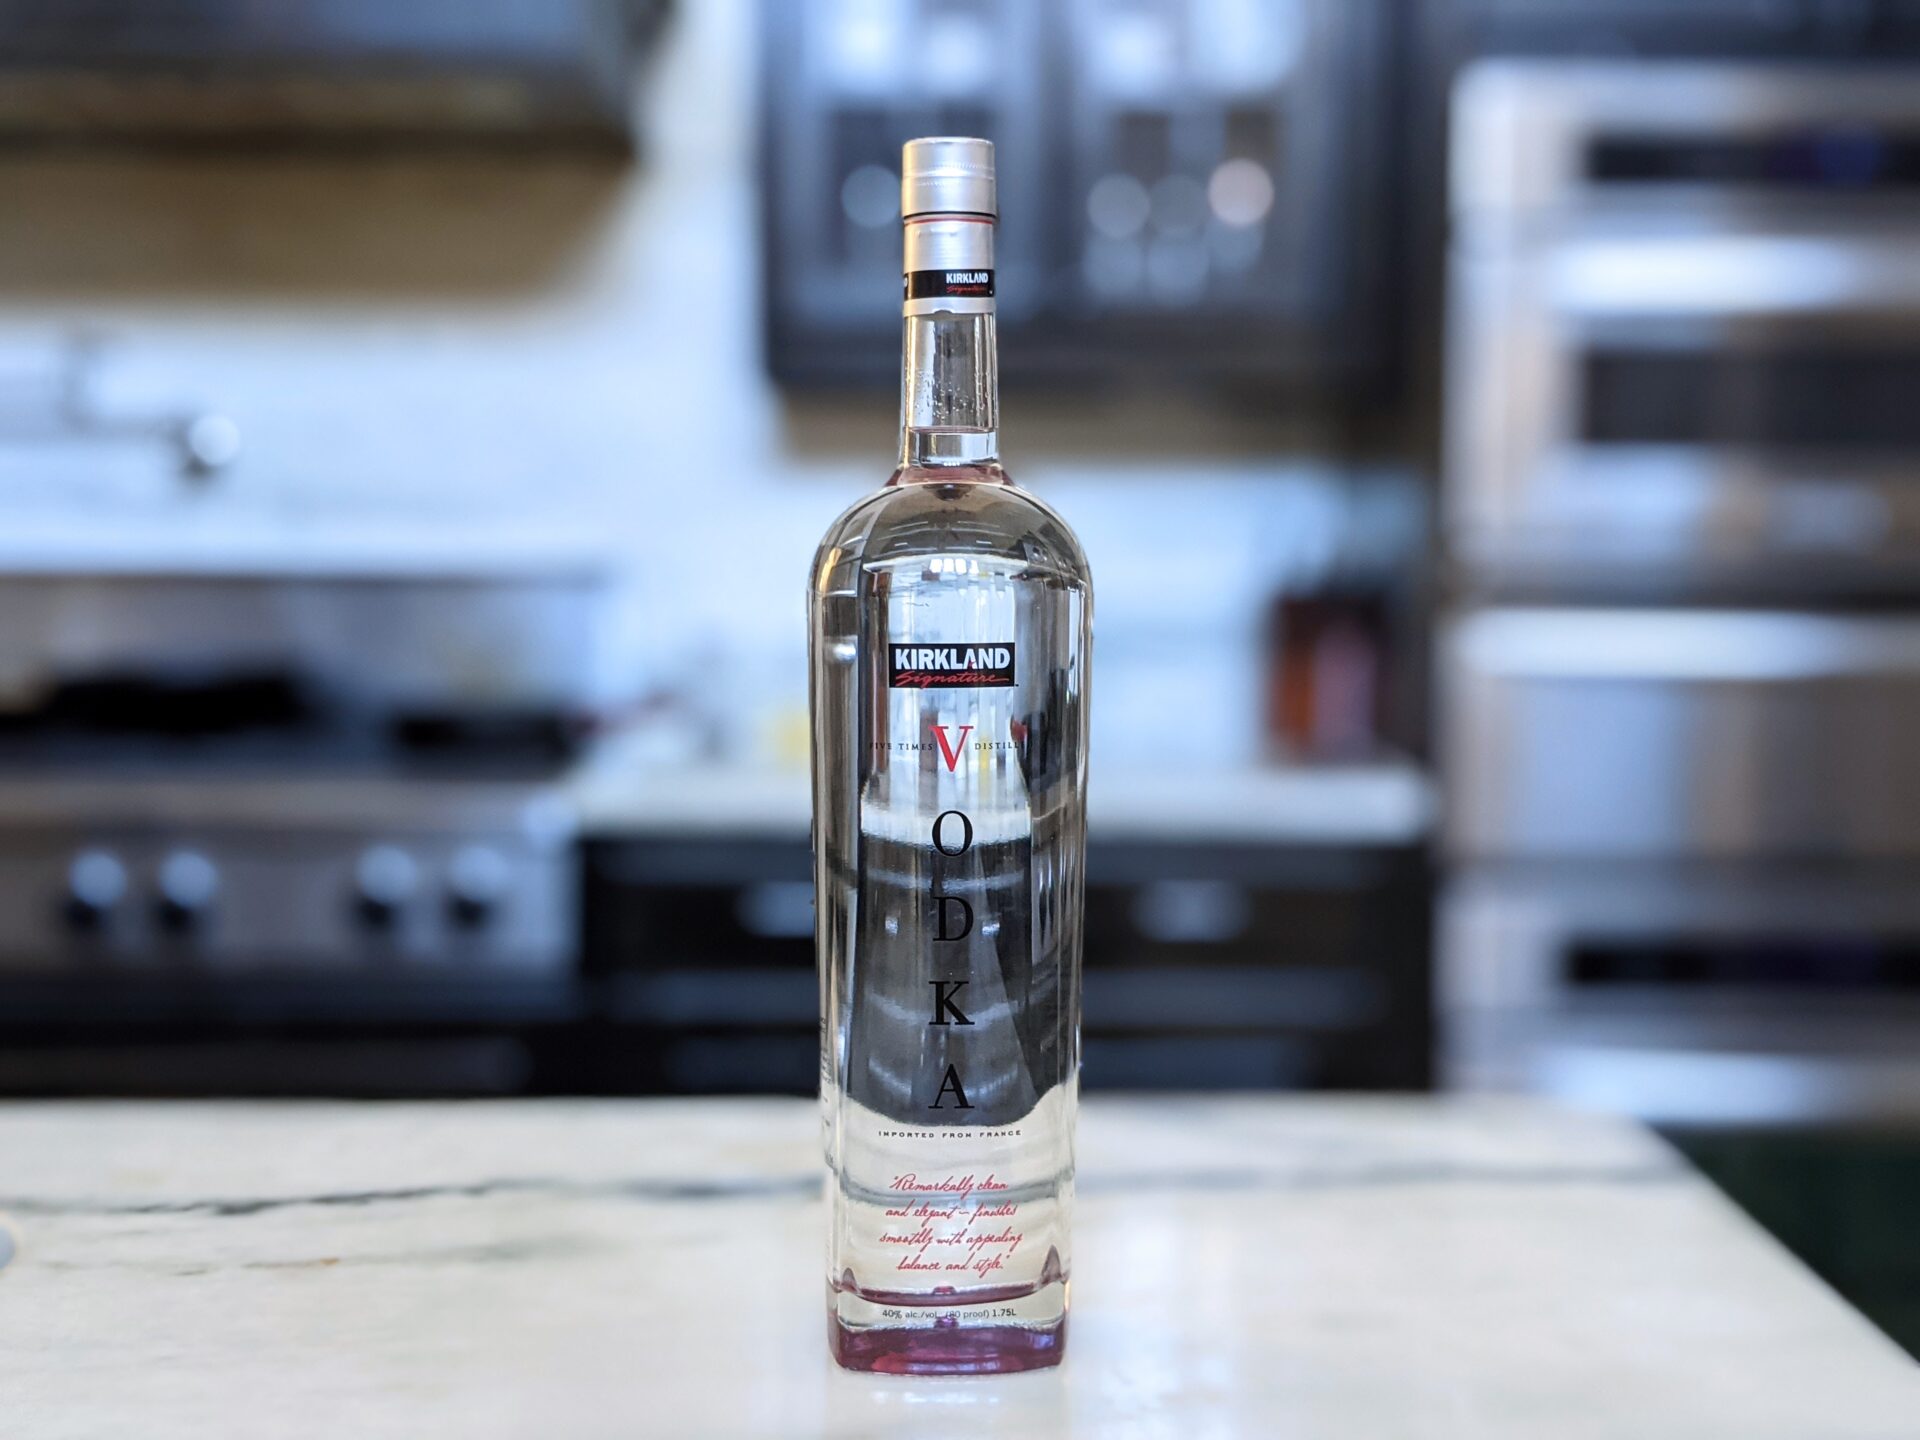 Costco S Kirkland French Vodka Mystery And Mastery